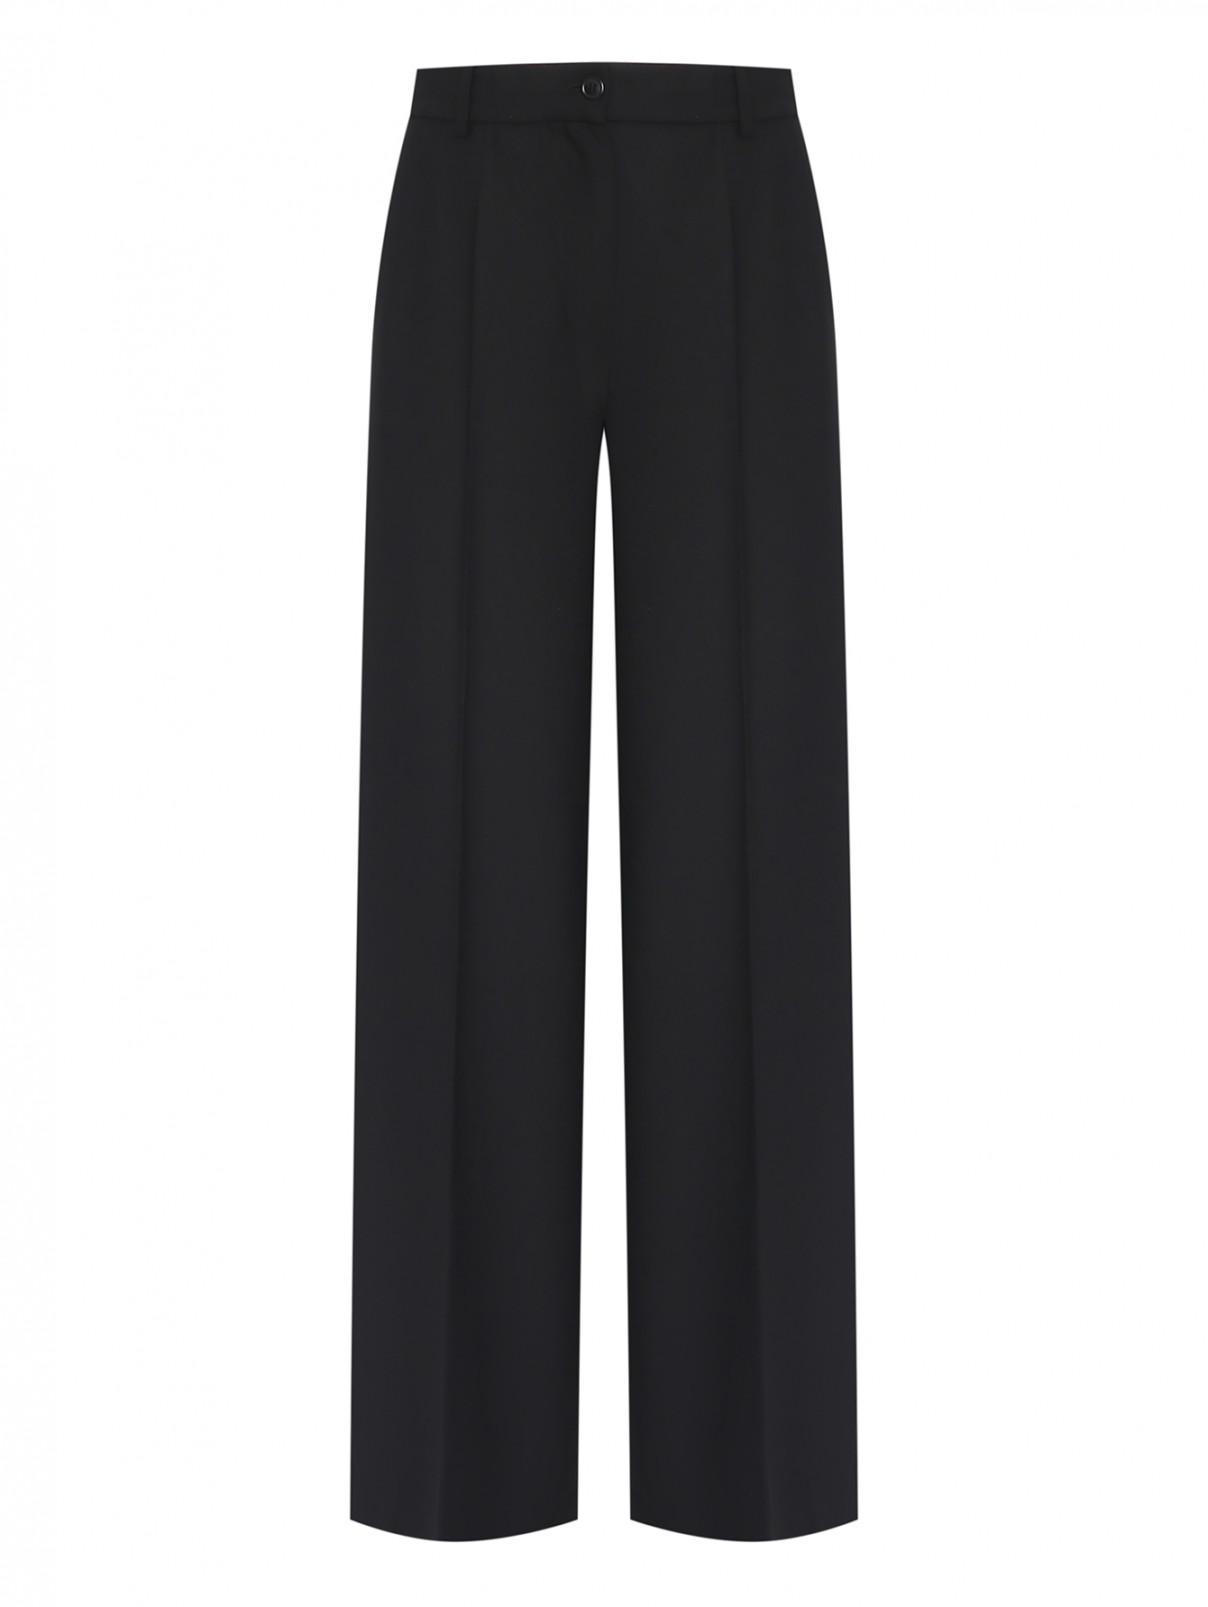 Широкие брюки со стрелками Luisa Spagnoli  –  Общий вид  – Цвет:  Черный